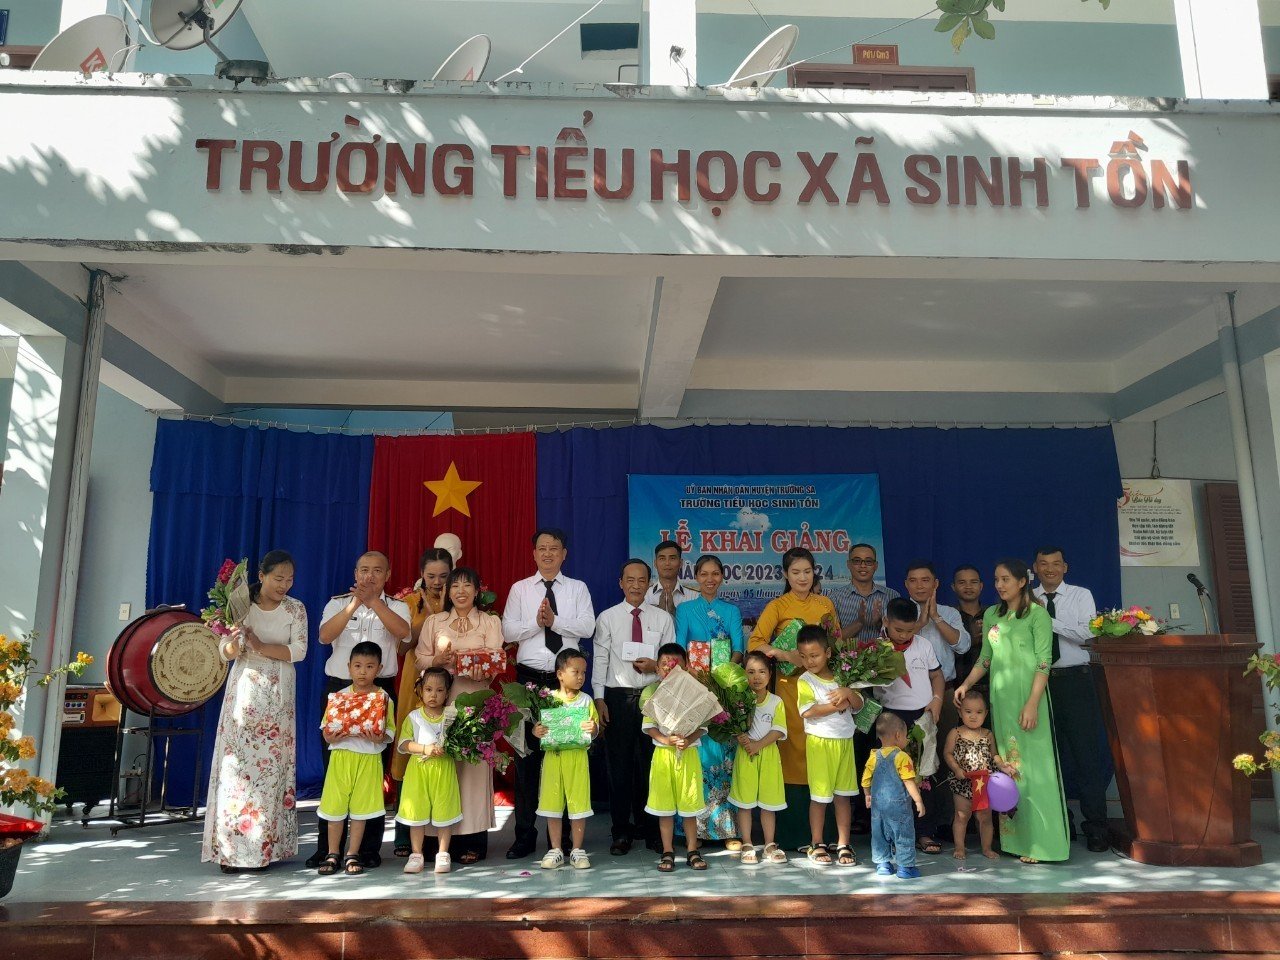  Đại diện chính quyền và các lực lượng trên đảo Sinh Tồn tặng quà cho thầy và trò của nhà trường. Ảnh: Nguyễn Ninh 